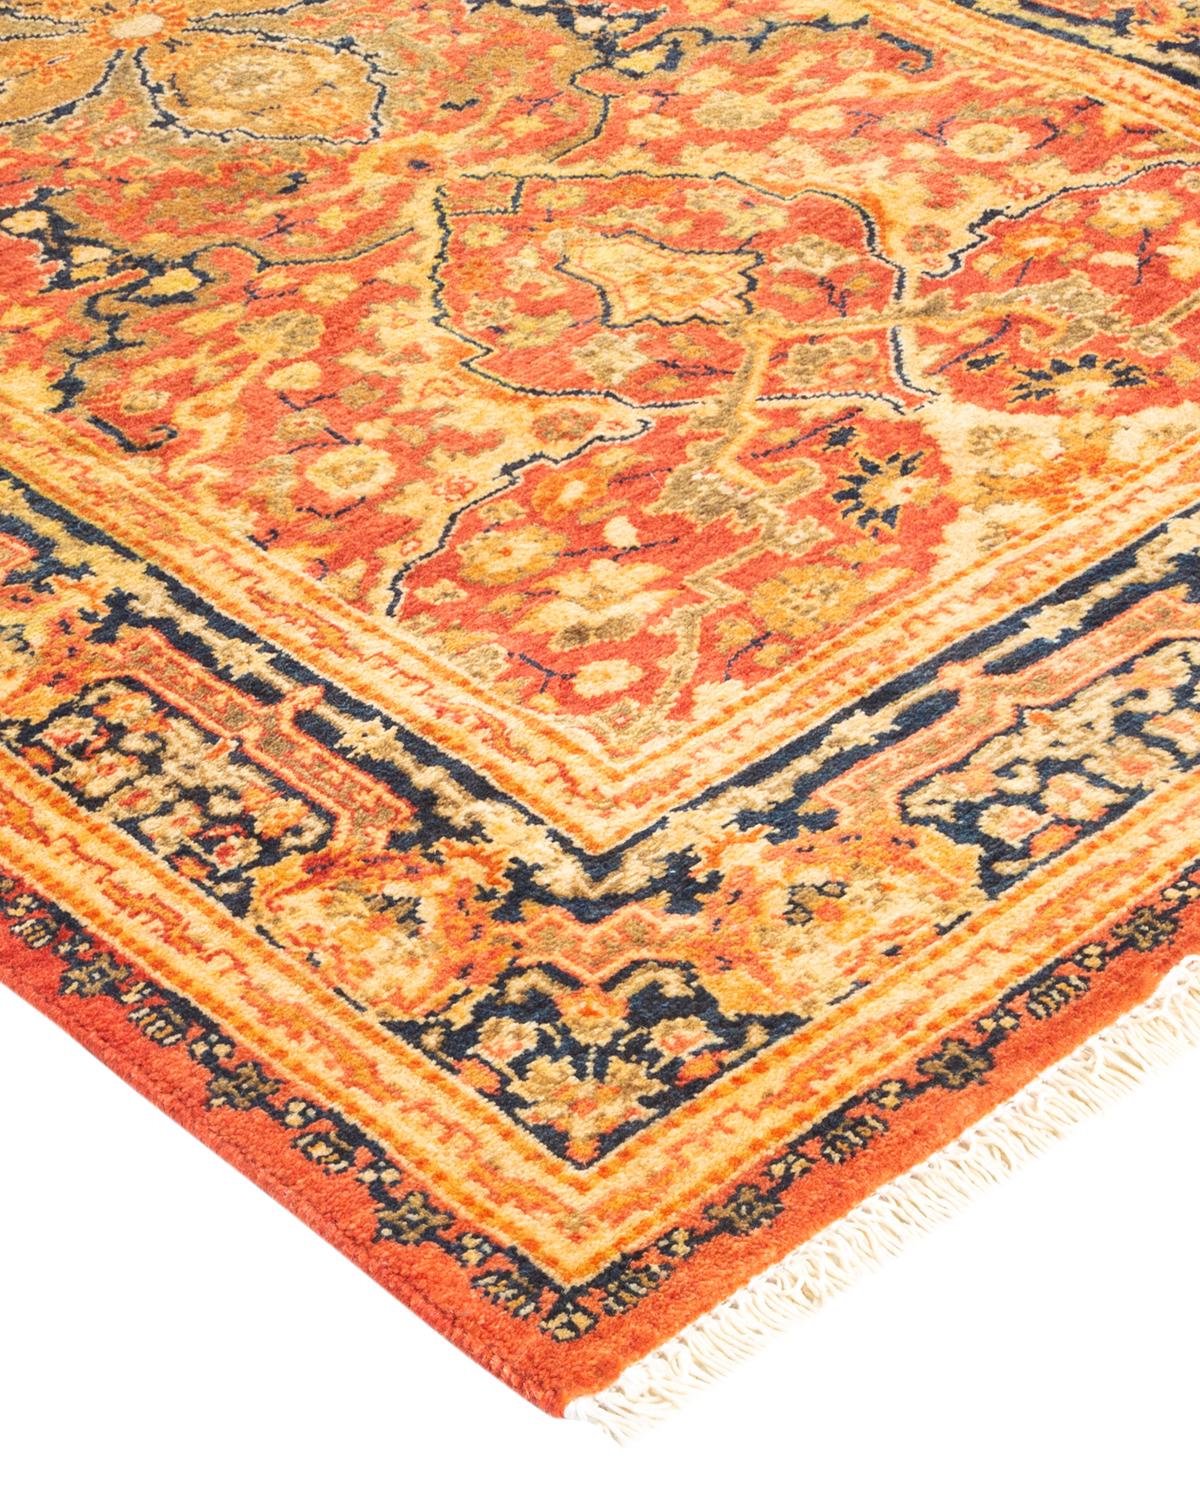 Die Teppiche der Mogul-Kollektion bringen mit ihren dezenten Farben und Allover-Mustern zeitlose Eleganz in jeden Raum. Beeinflusst von einem Spektrum türkischer, indischer und persischer Designs, lassen die Kunsthandwerker, die diese Wollteppiche